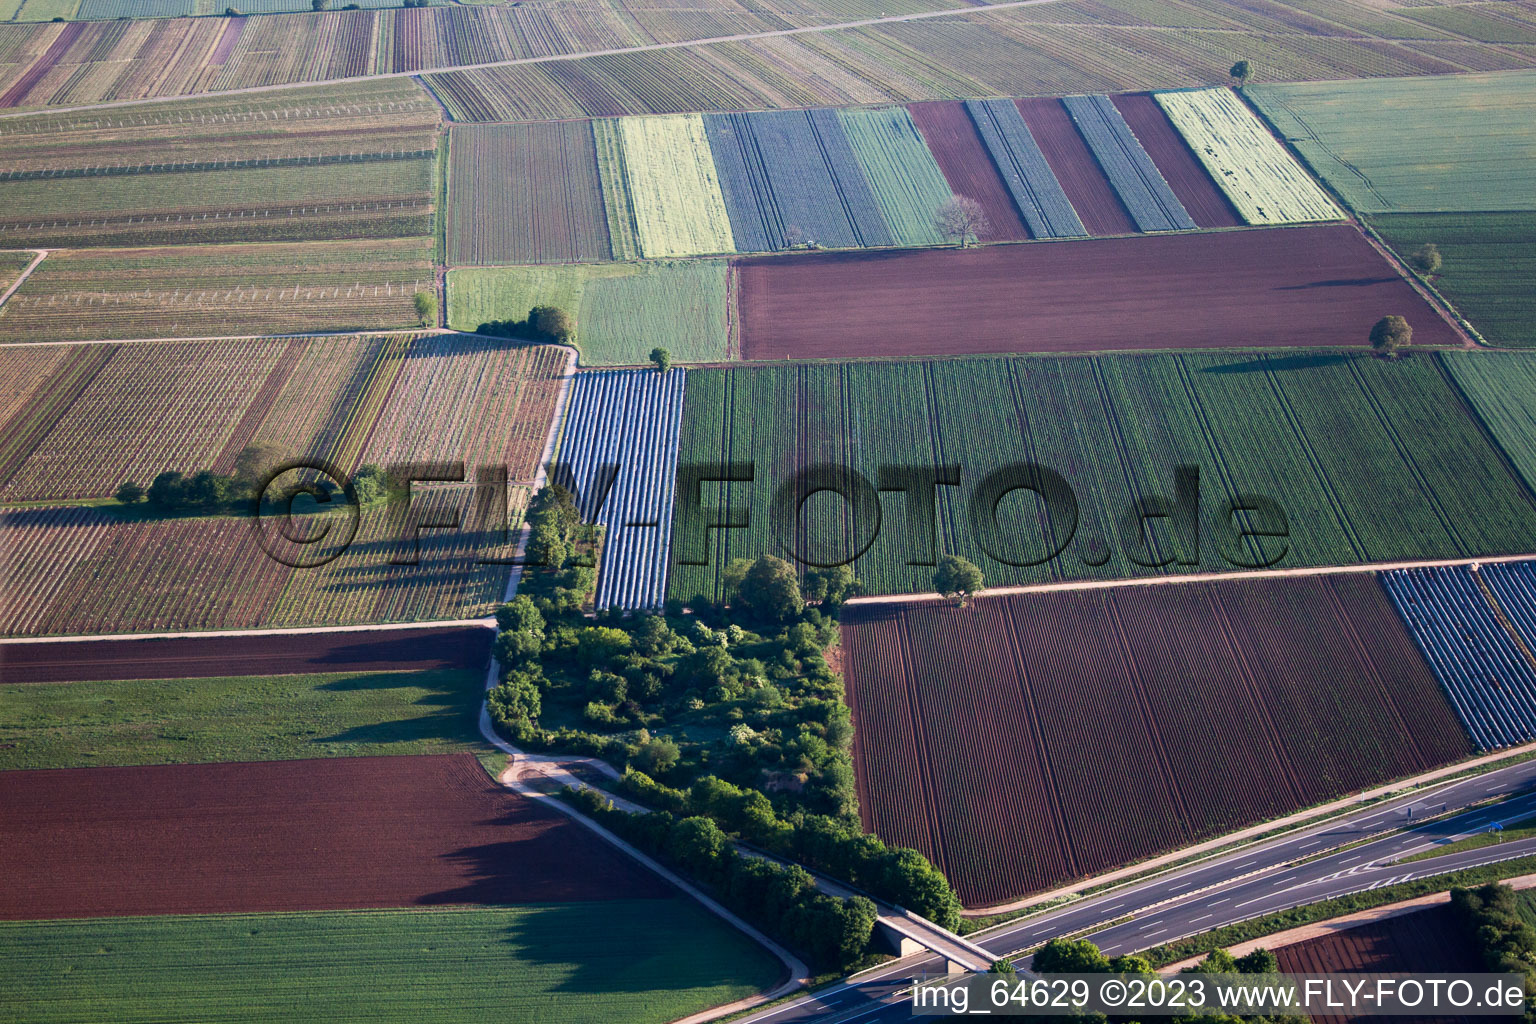 Ortsteil Mußbach in Neustadt an der Weinstraße im Bundesland Rheinland-Pfalz, Deutschland aus der Drohnenperspektive